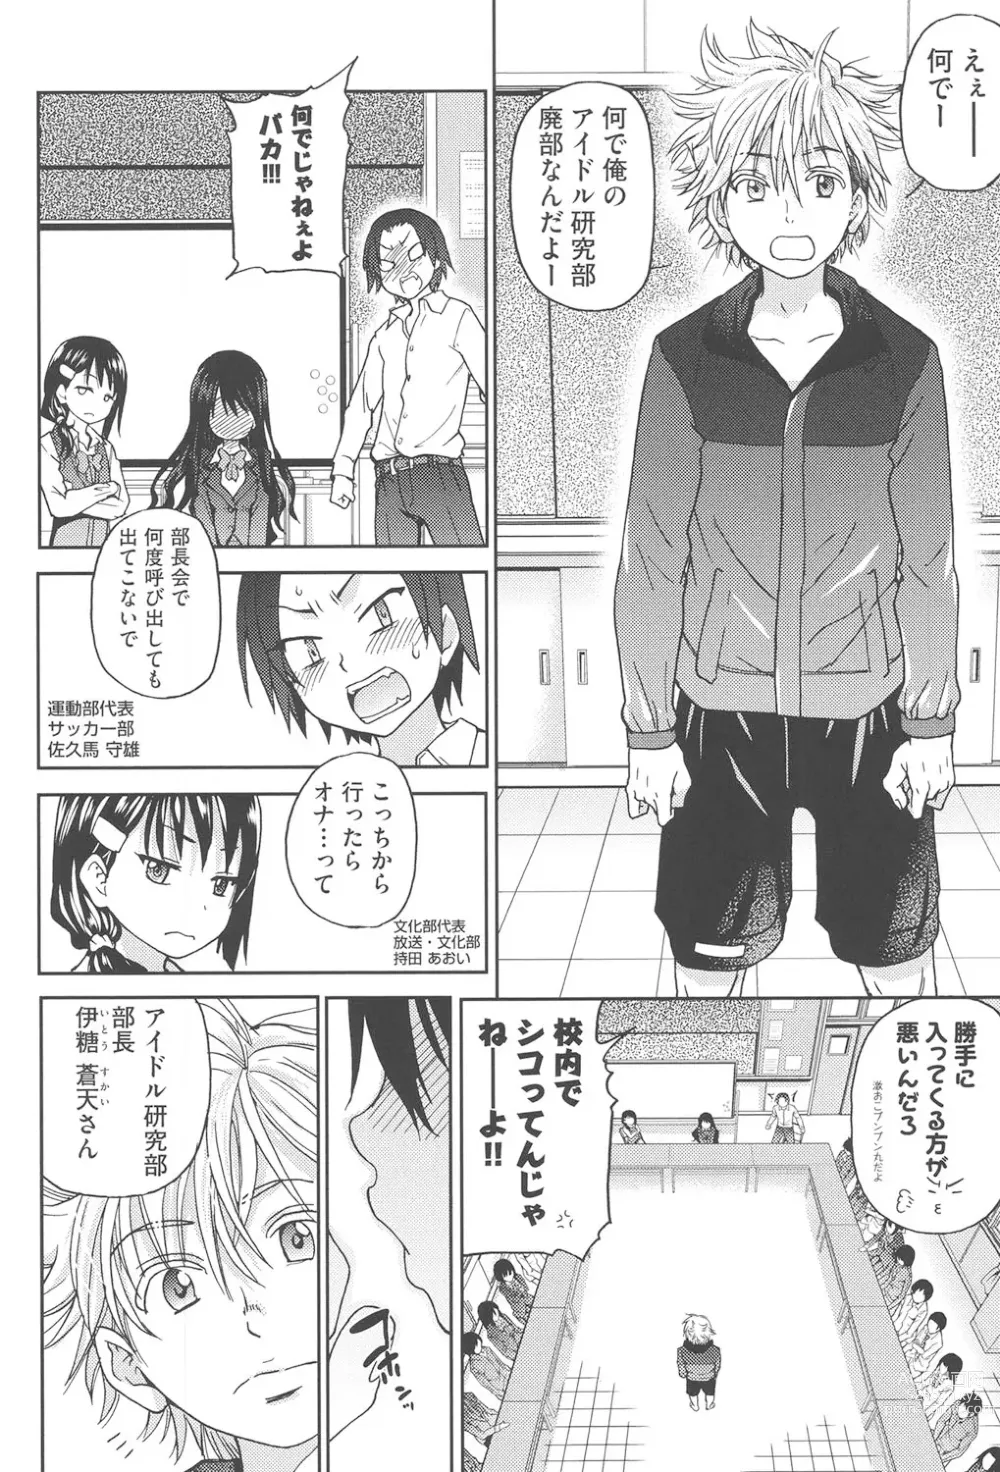 Page 9 of manga Aibuka!